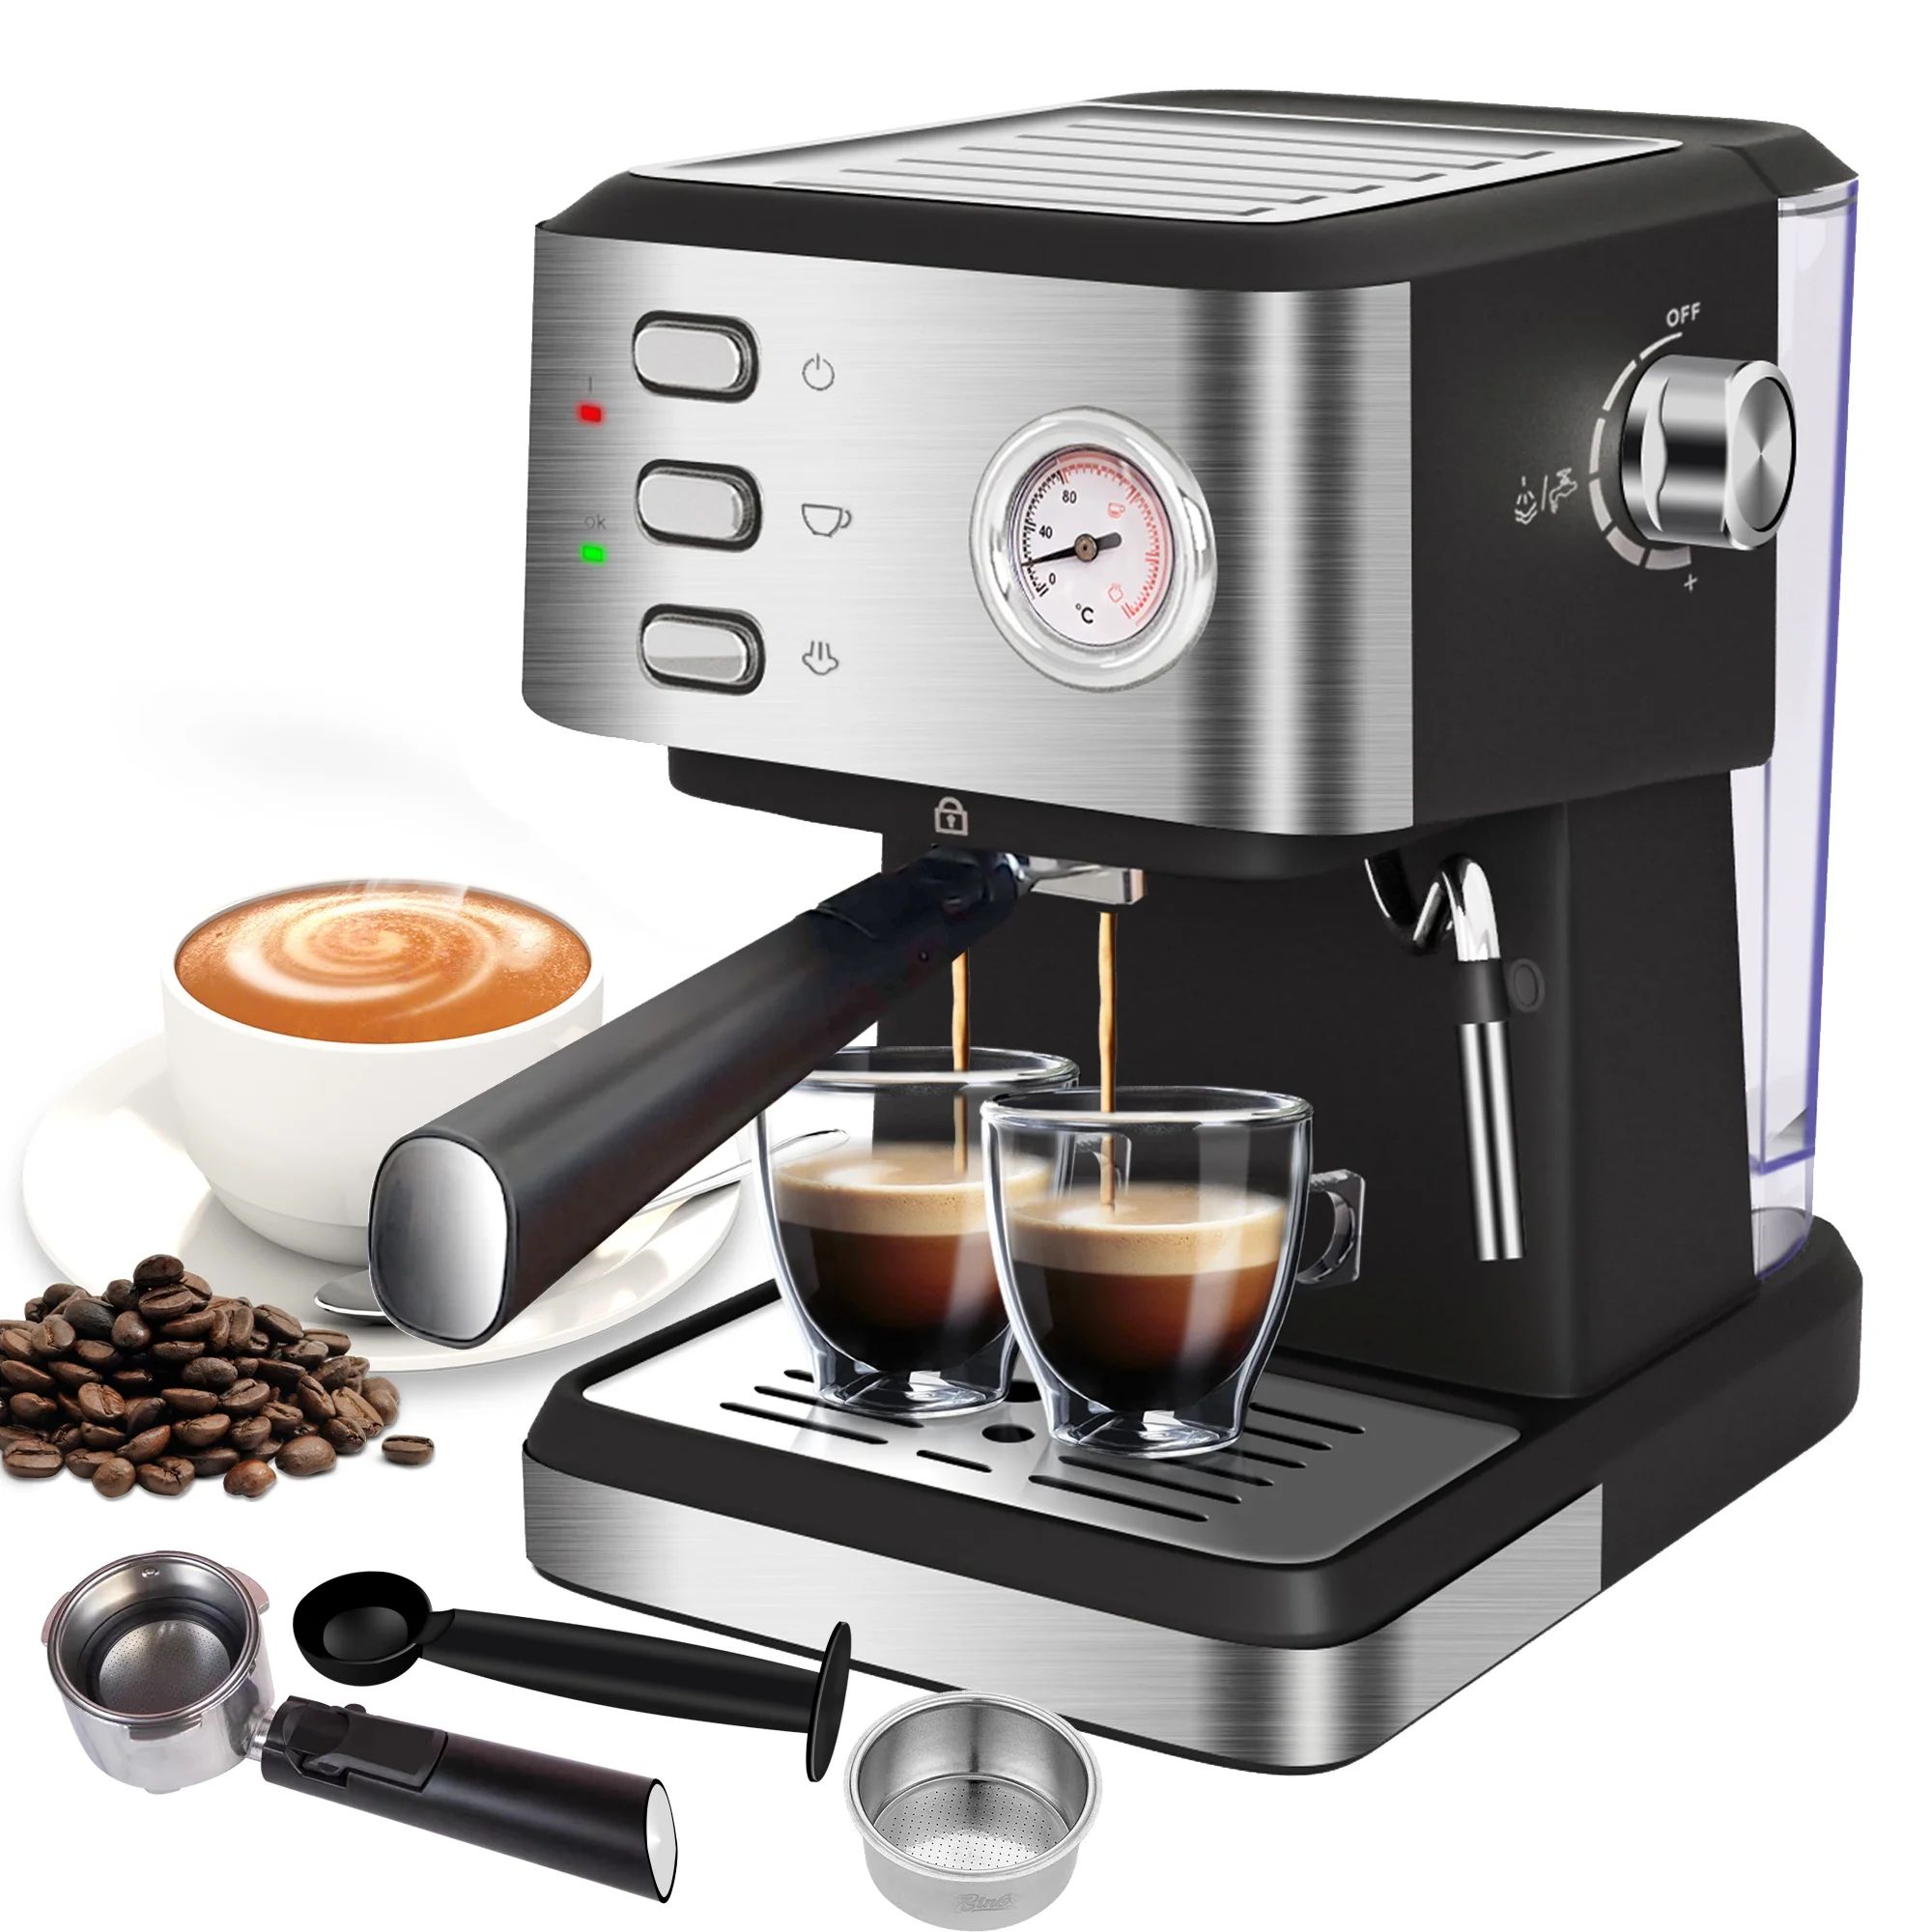 Espresso Machine 20 Bar, 1.5L Water Tank Pressure Gauge Milk Frother Steam Coffee Maker, Silver | Walmart (US)